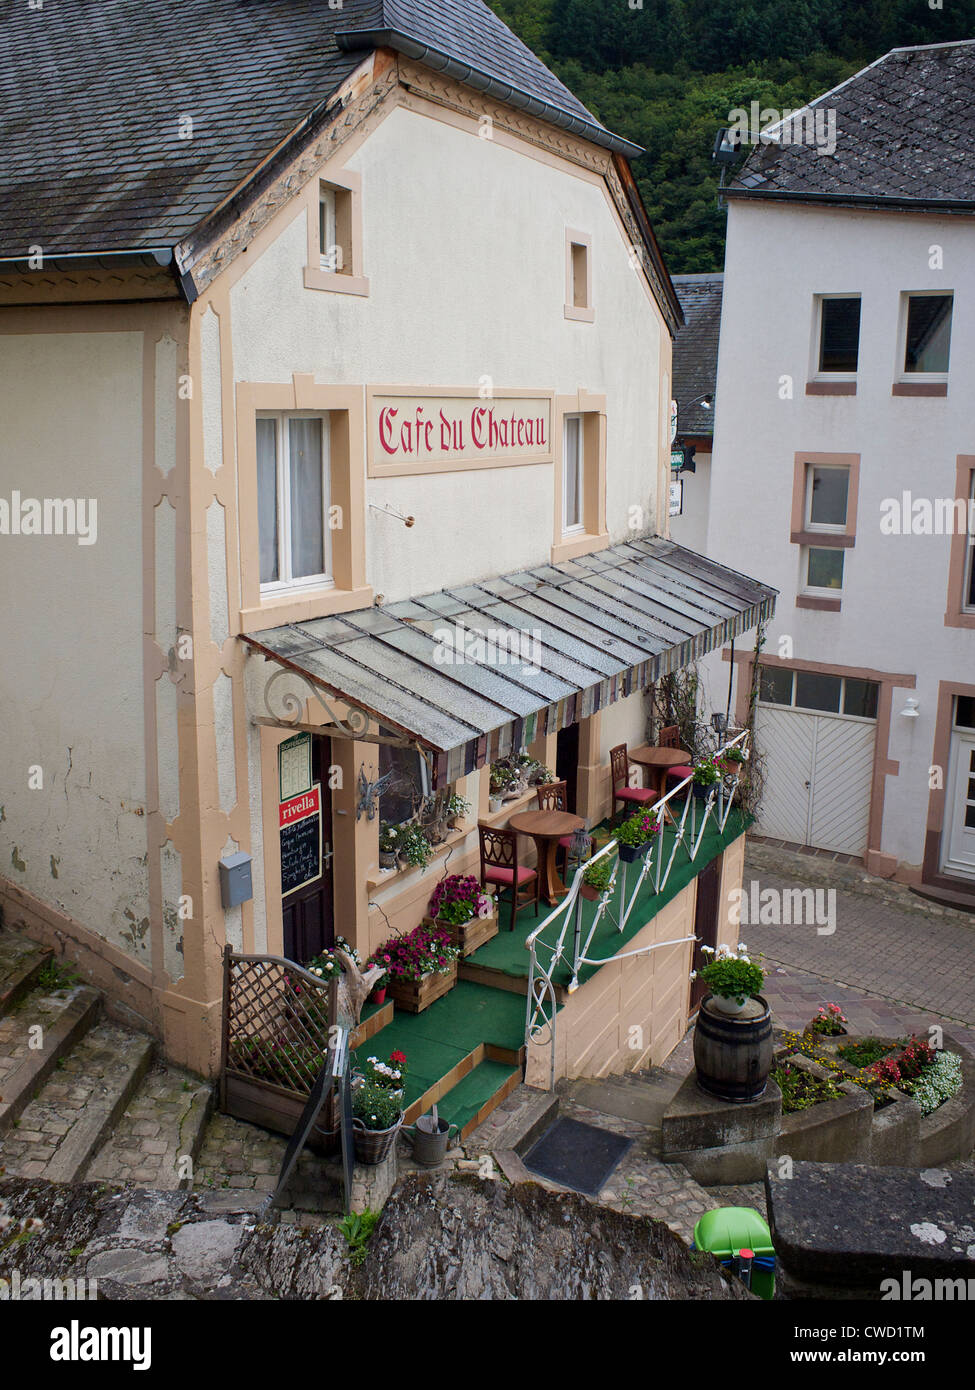 Ruhiges Dorf Café in Esch Sur sicher Luxemburg Stockfoto